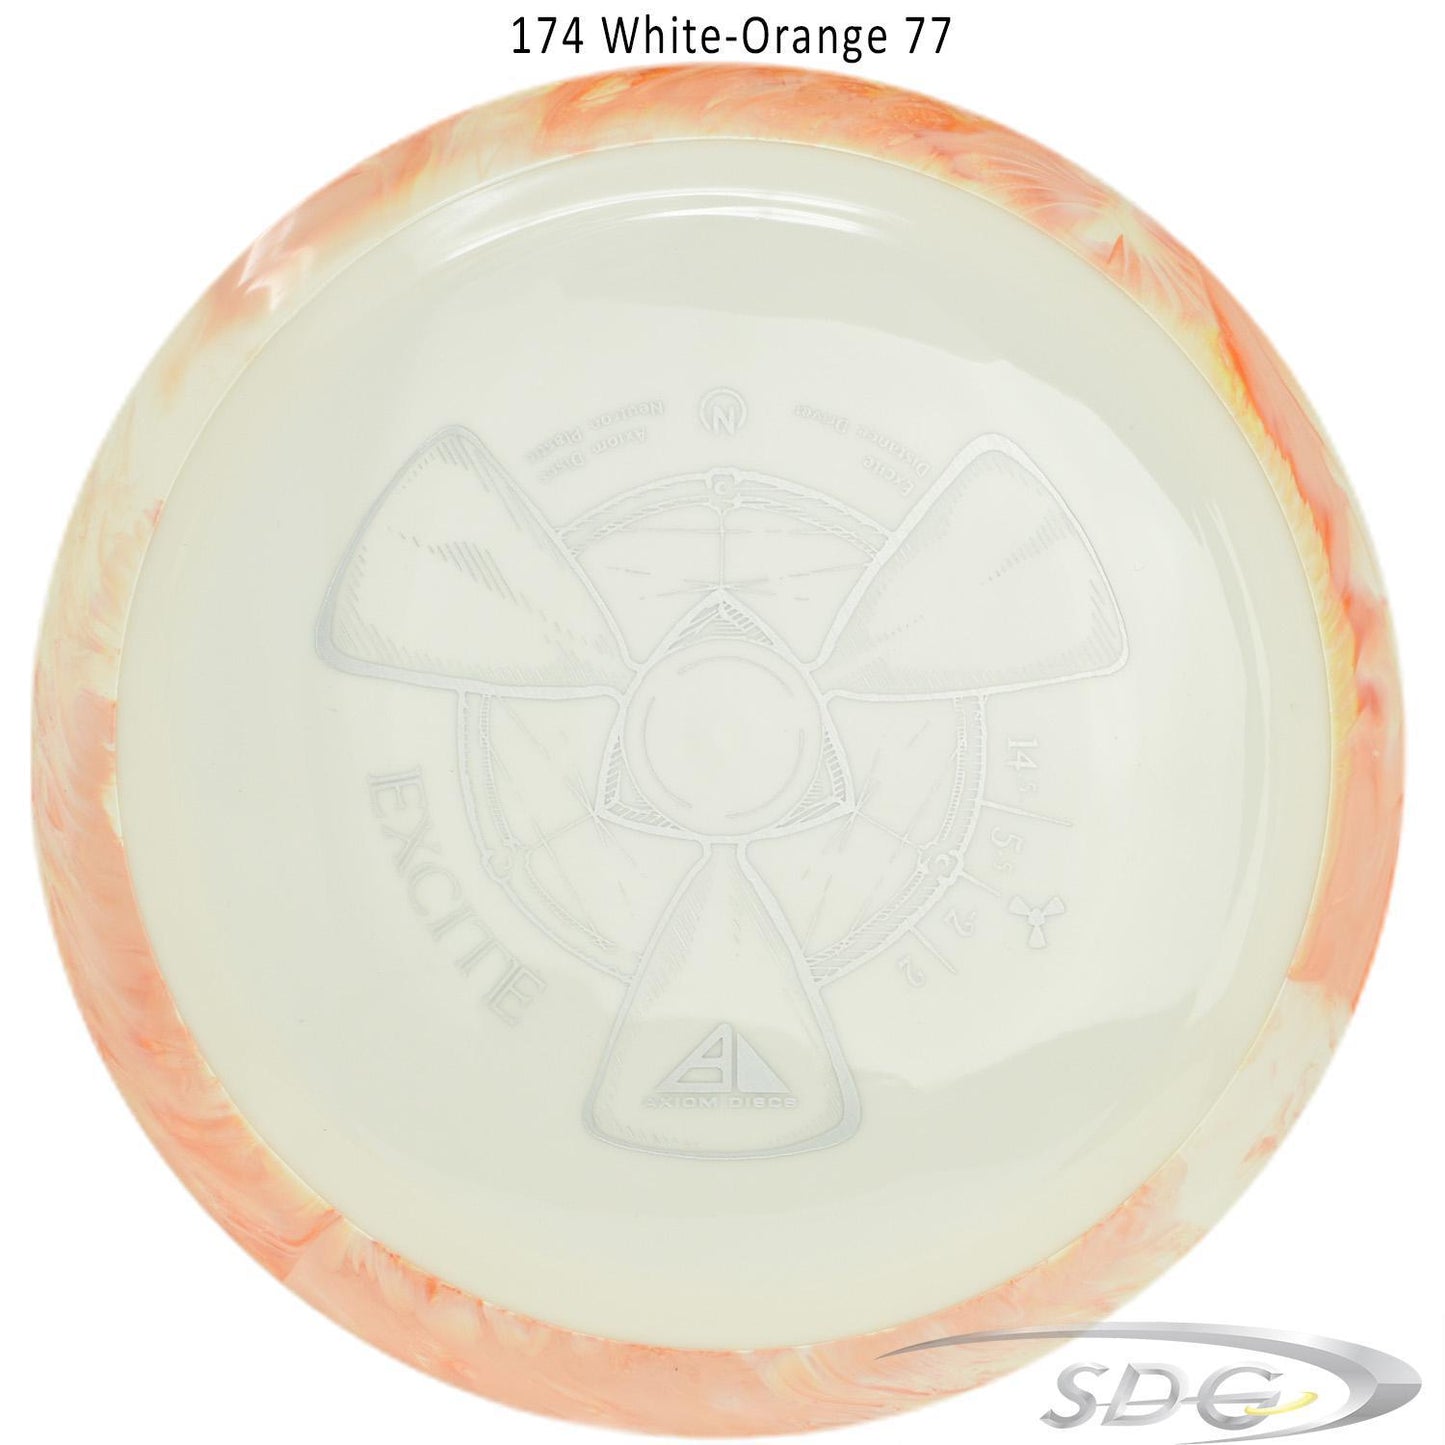 axiom-neutron-excite-disc-golf-distance-driver 174 White-Orange 77 